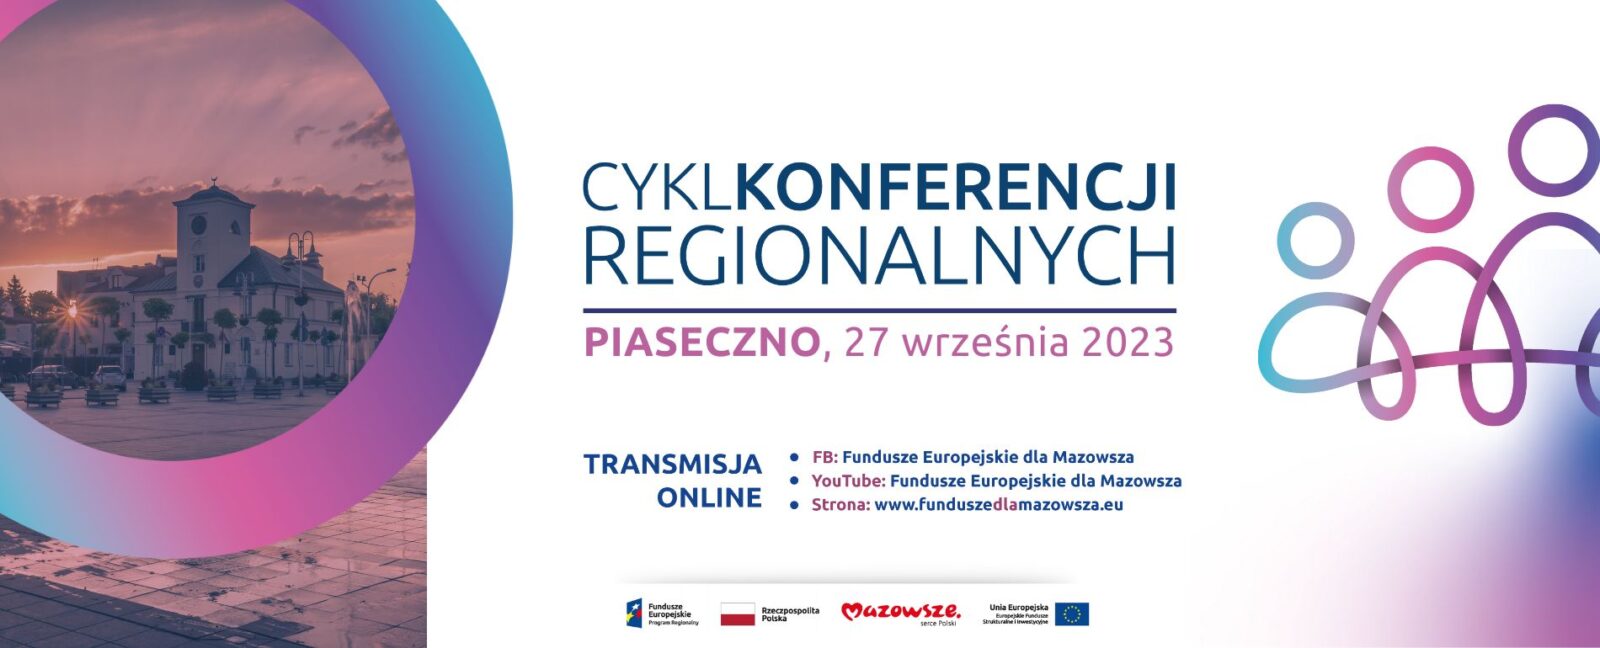 Na grafice znajduje się napis: Cykl Konferencji Regionalnych Piaseczno 27 września 2023, poniżej zamieszczone są linki do strony internetowej funduszeeuropejskiedlamazowsza.eu oraz profili na facebooku oraz yt.